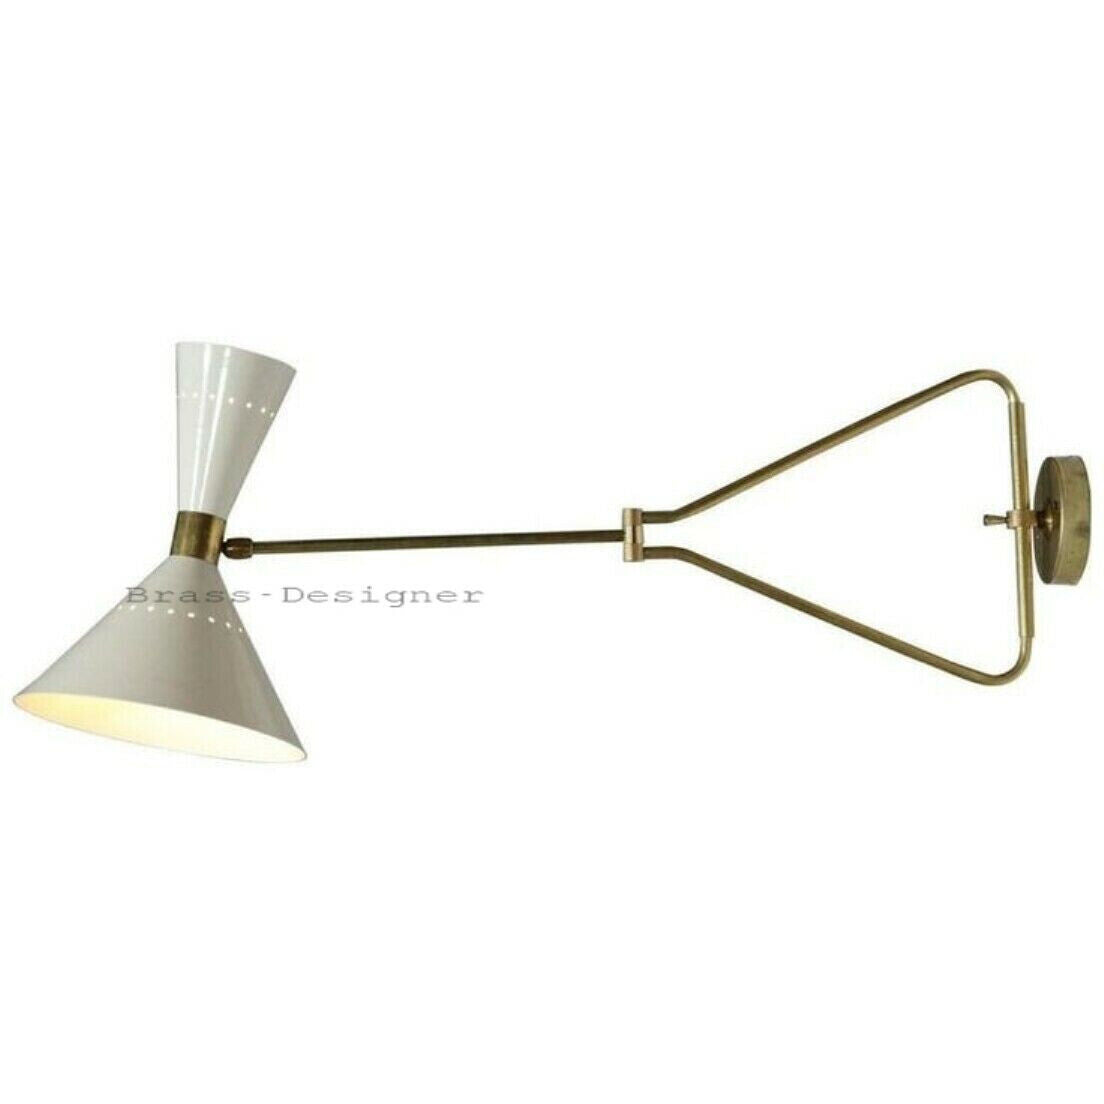 1950 Brass White Wall lamp Diabolo Italian Cone Stilnovo Sputnik Light Swing Arm Italian Diabolo Wall Sconce Lamps for Elegant Lighting